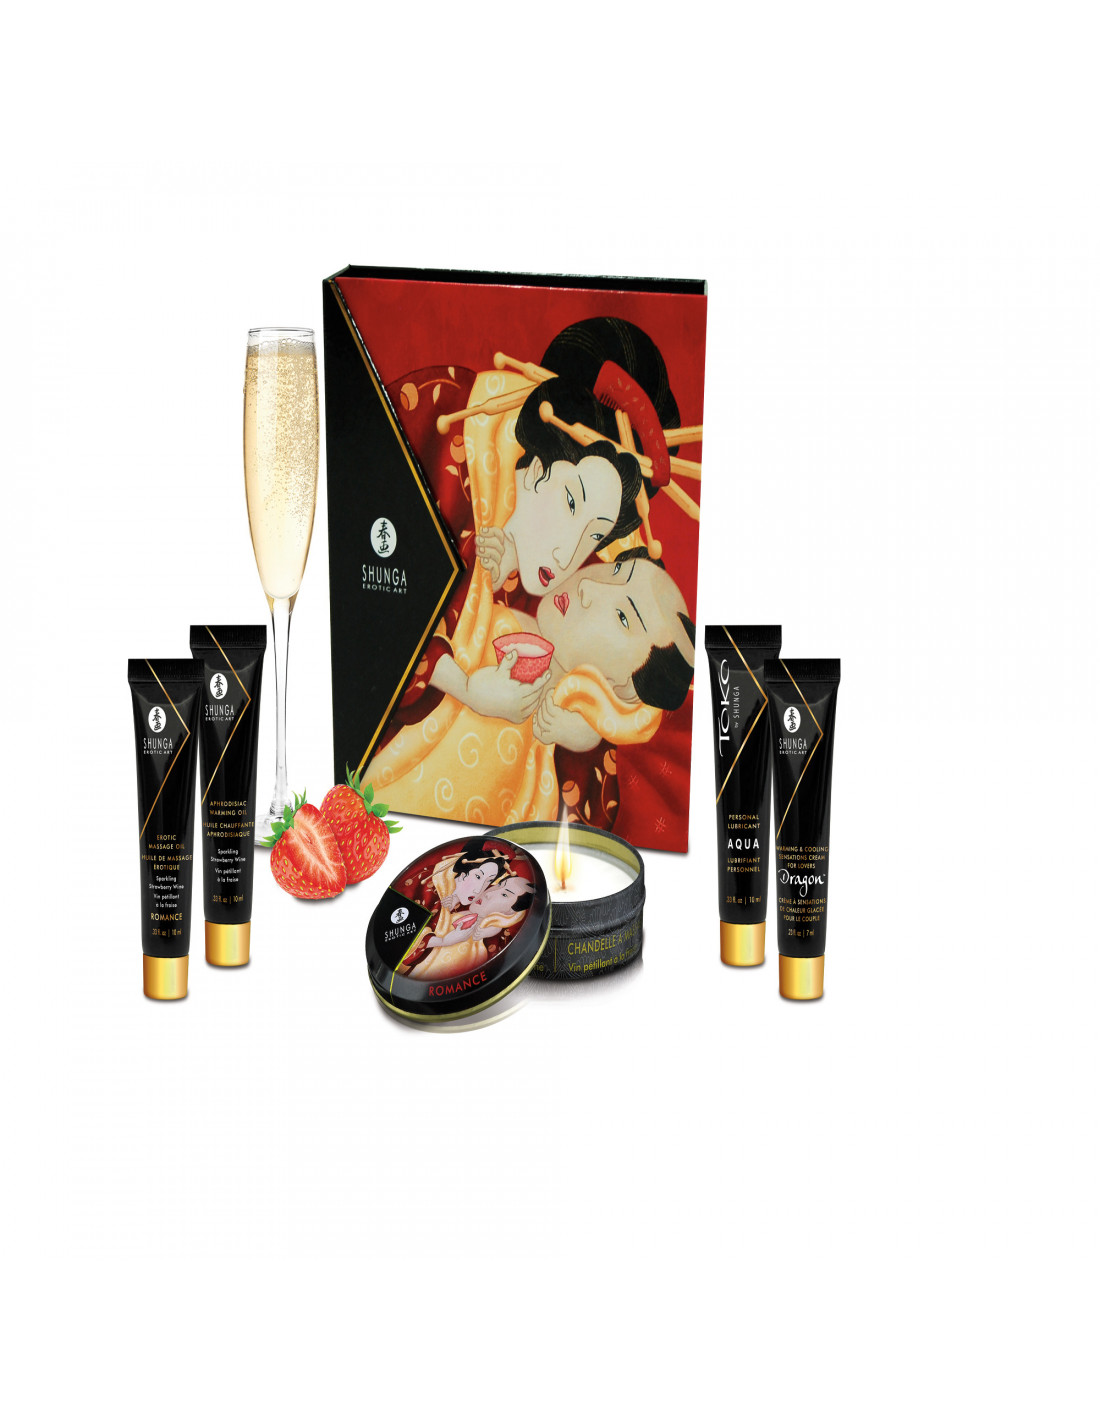 Shunga Coffret secret de geisha E2wBg6bN